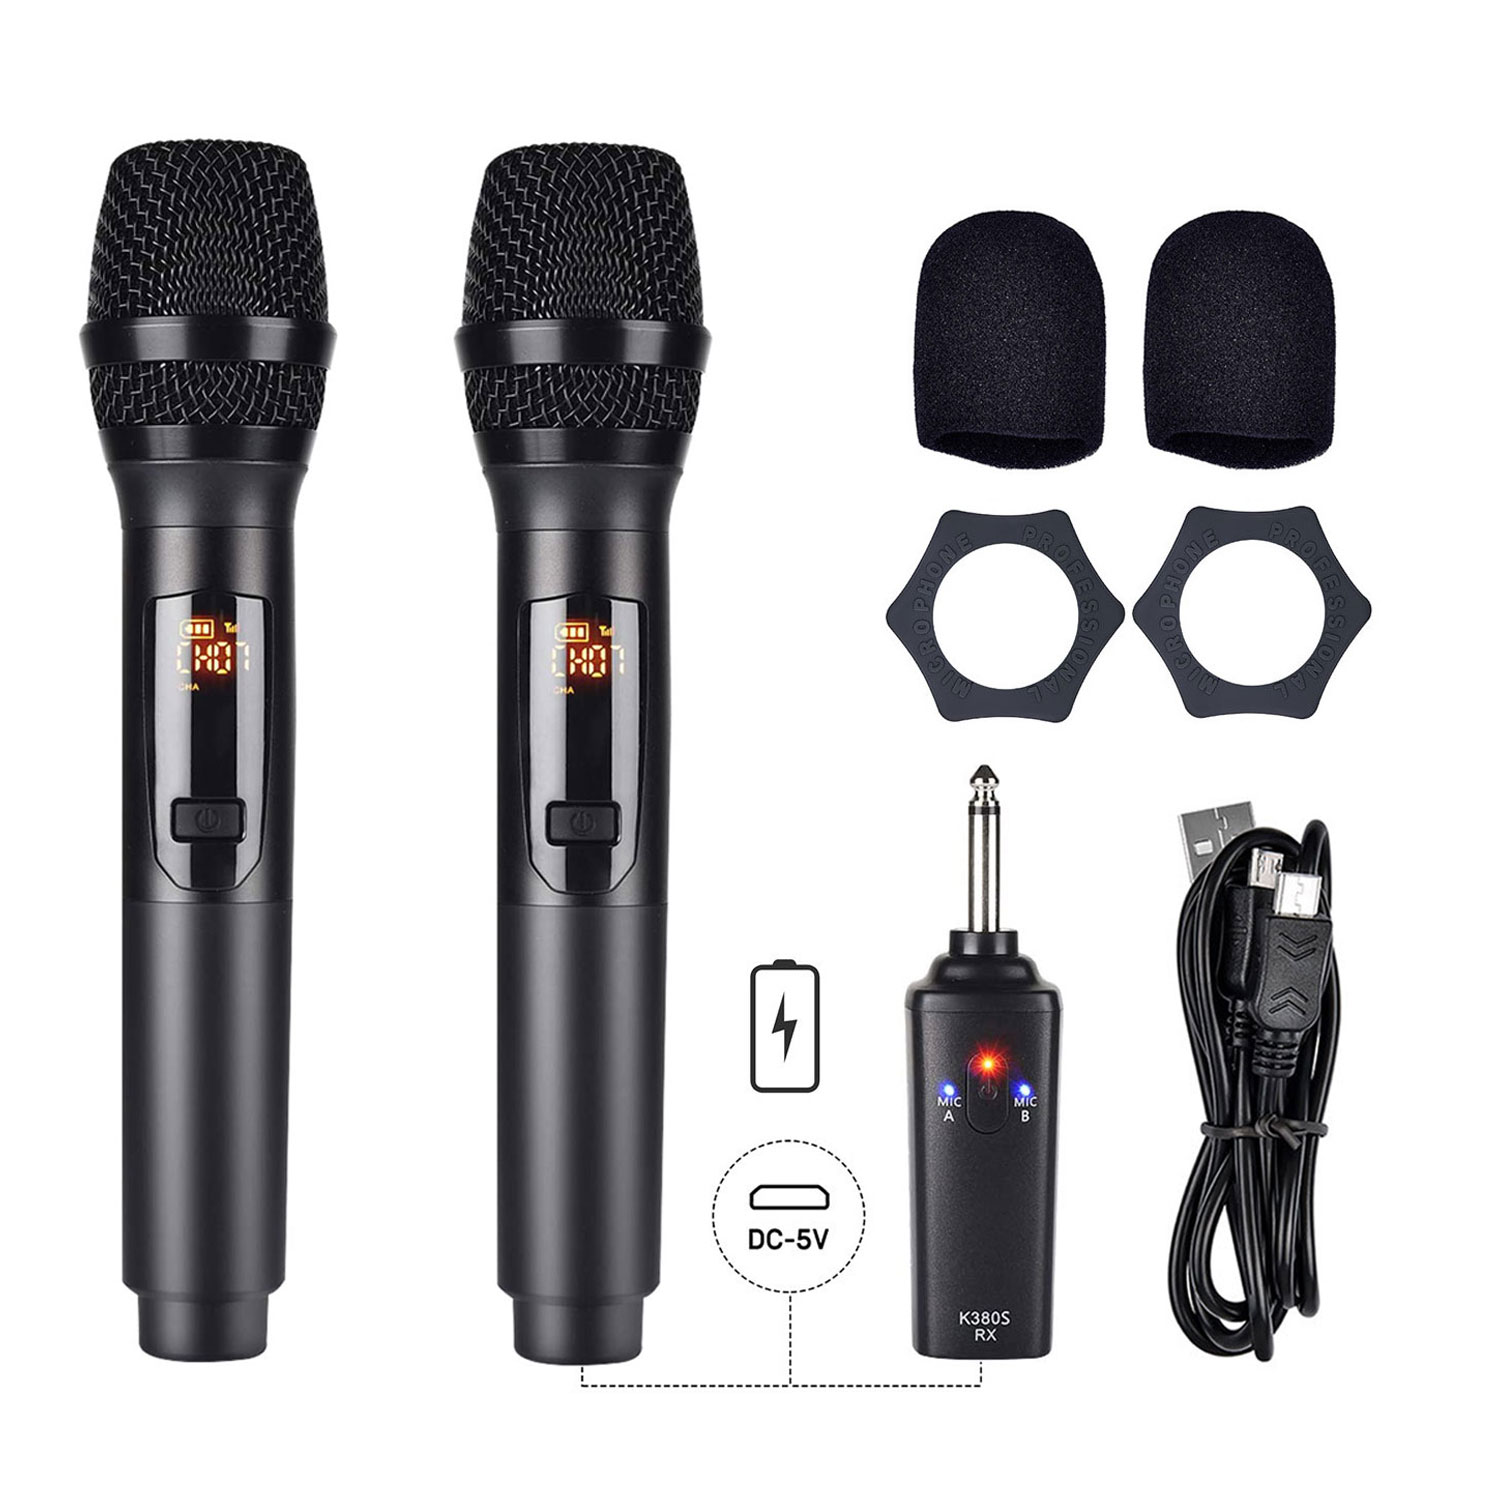 [Không Dây] Bộ 2 Mic Wireless Pin Sạc Gitafish K380S - Micro Cầm Tay Vocal Microphone Karaoke Portable Hàng Chính Hãng